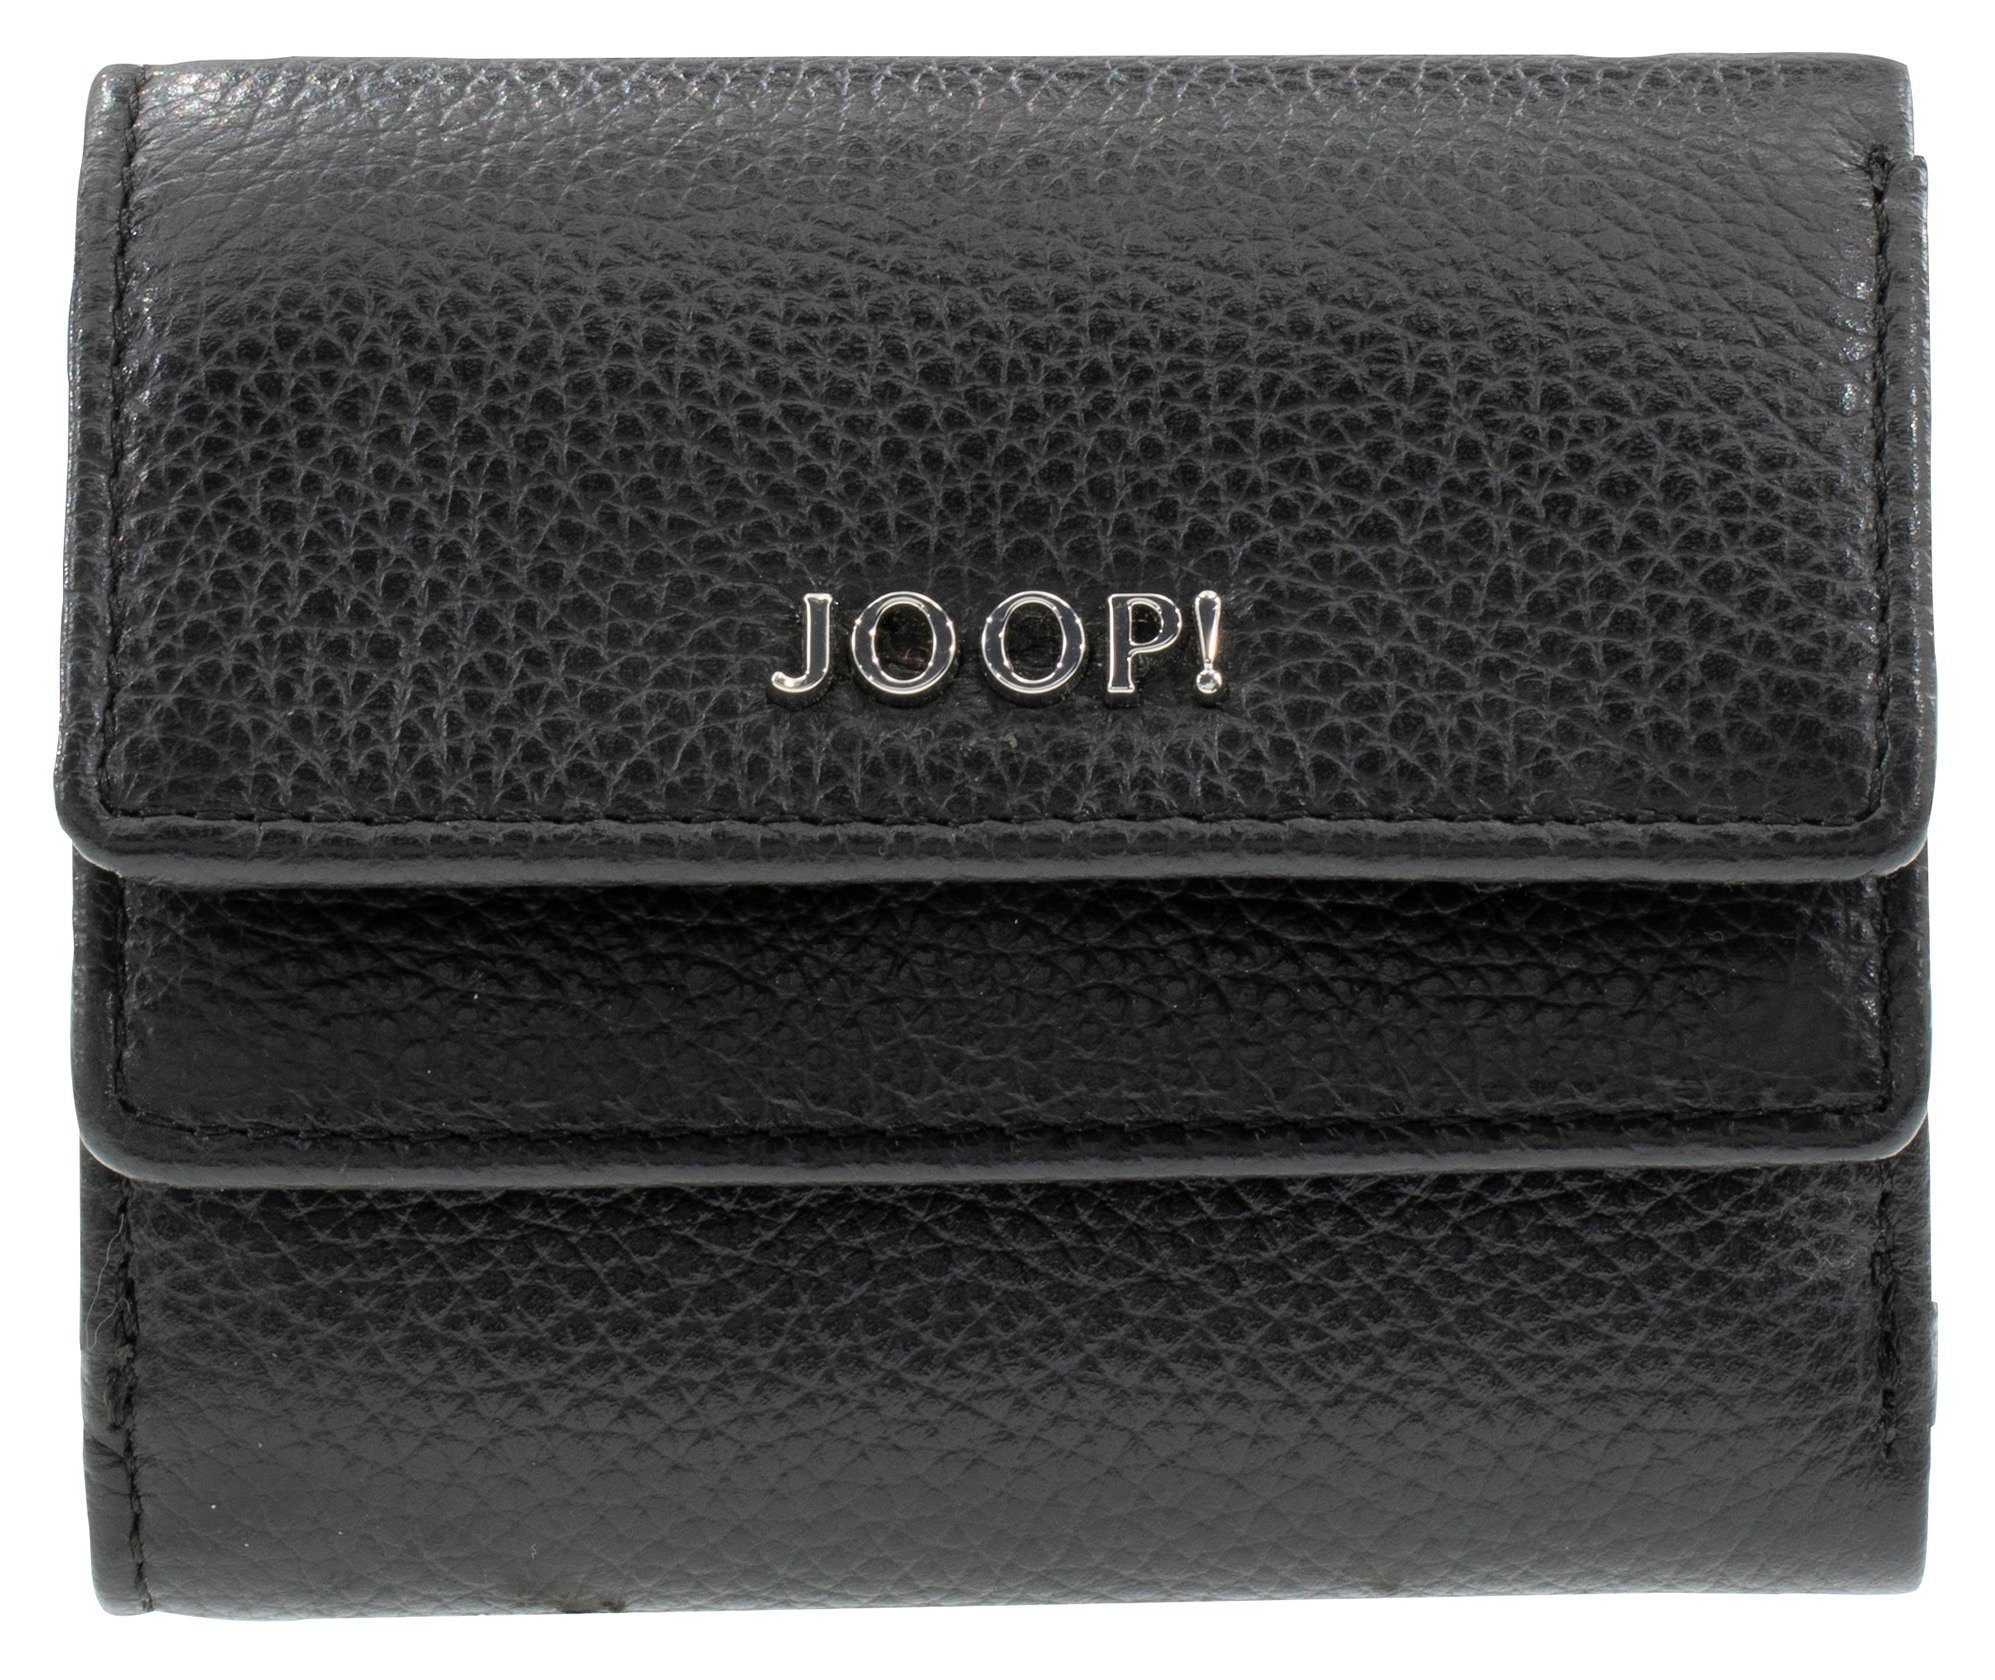 Garantierte Qualität Joop! Geldbörse vivace lina purse sh5f, kleinen black im Format